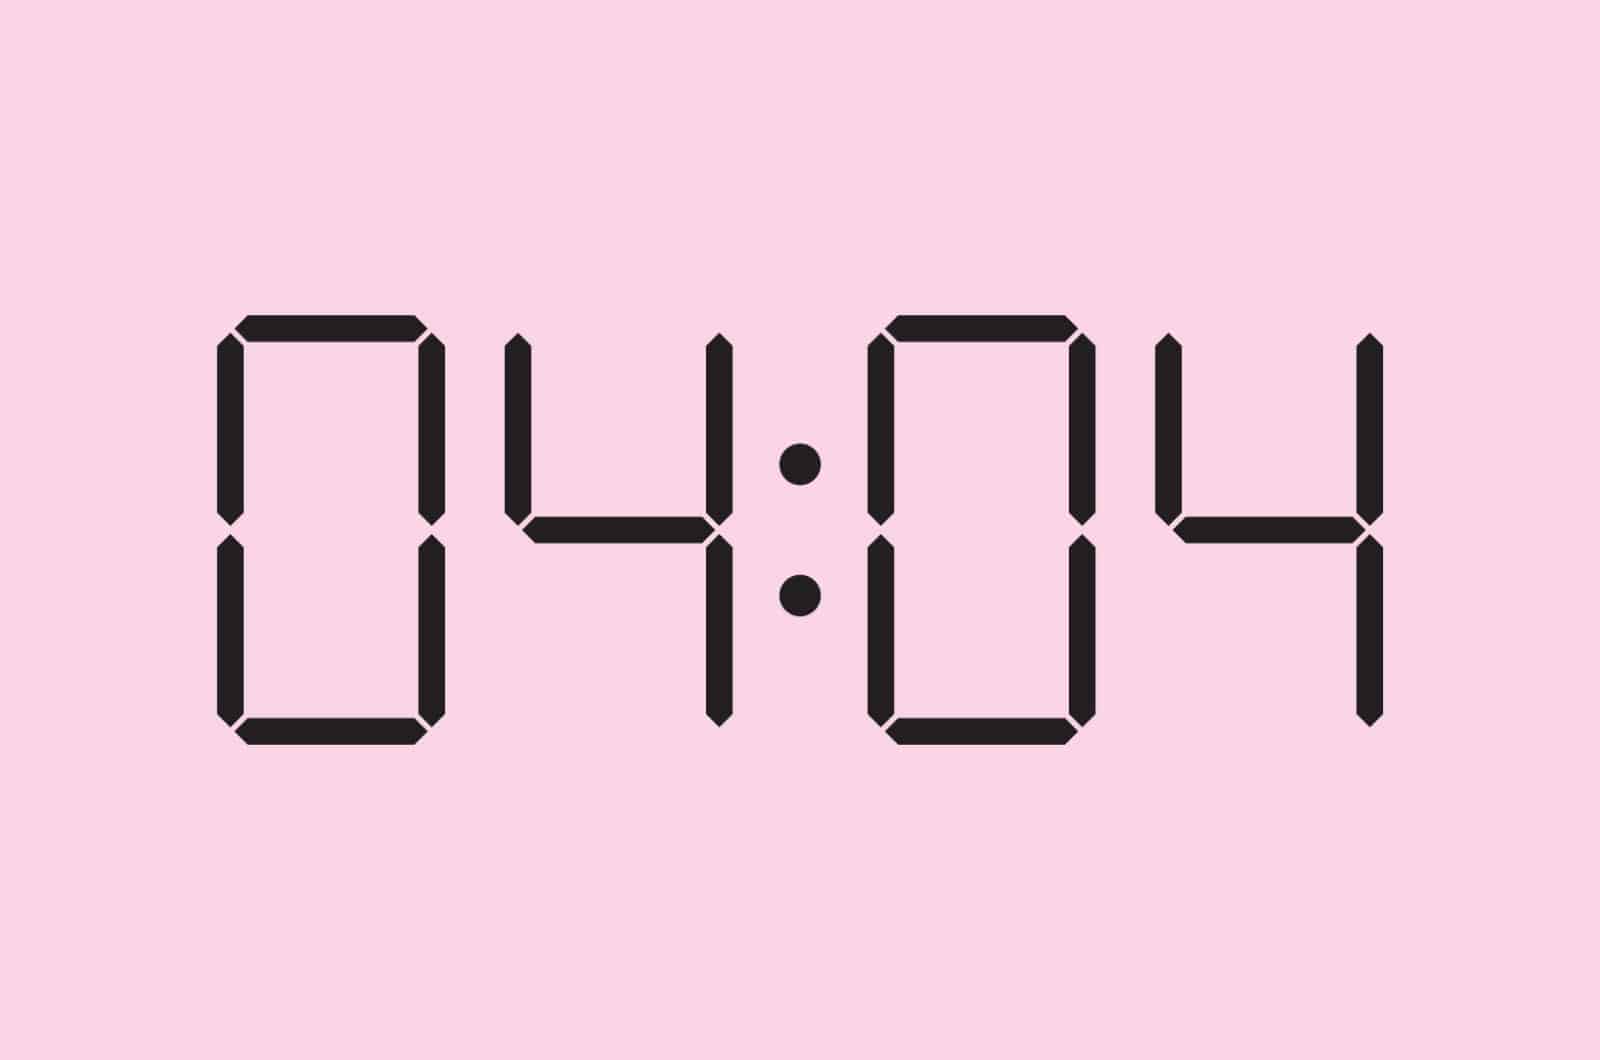 04:04 sur une horloge numérique